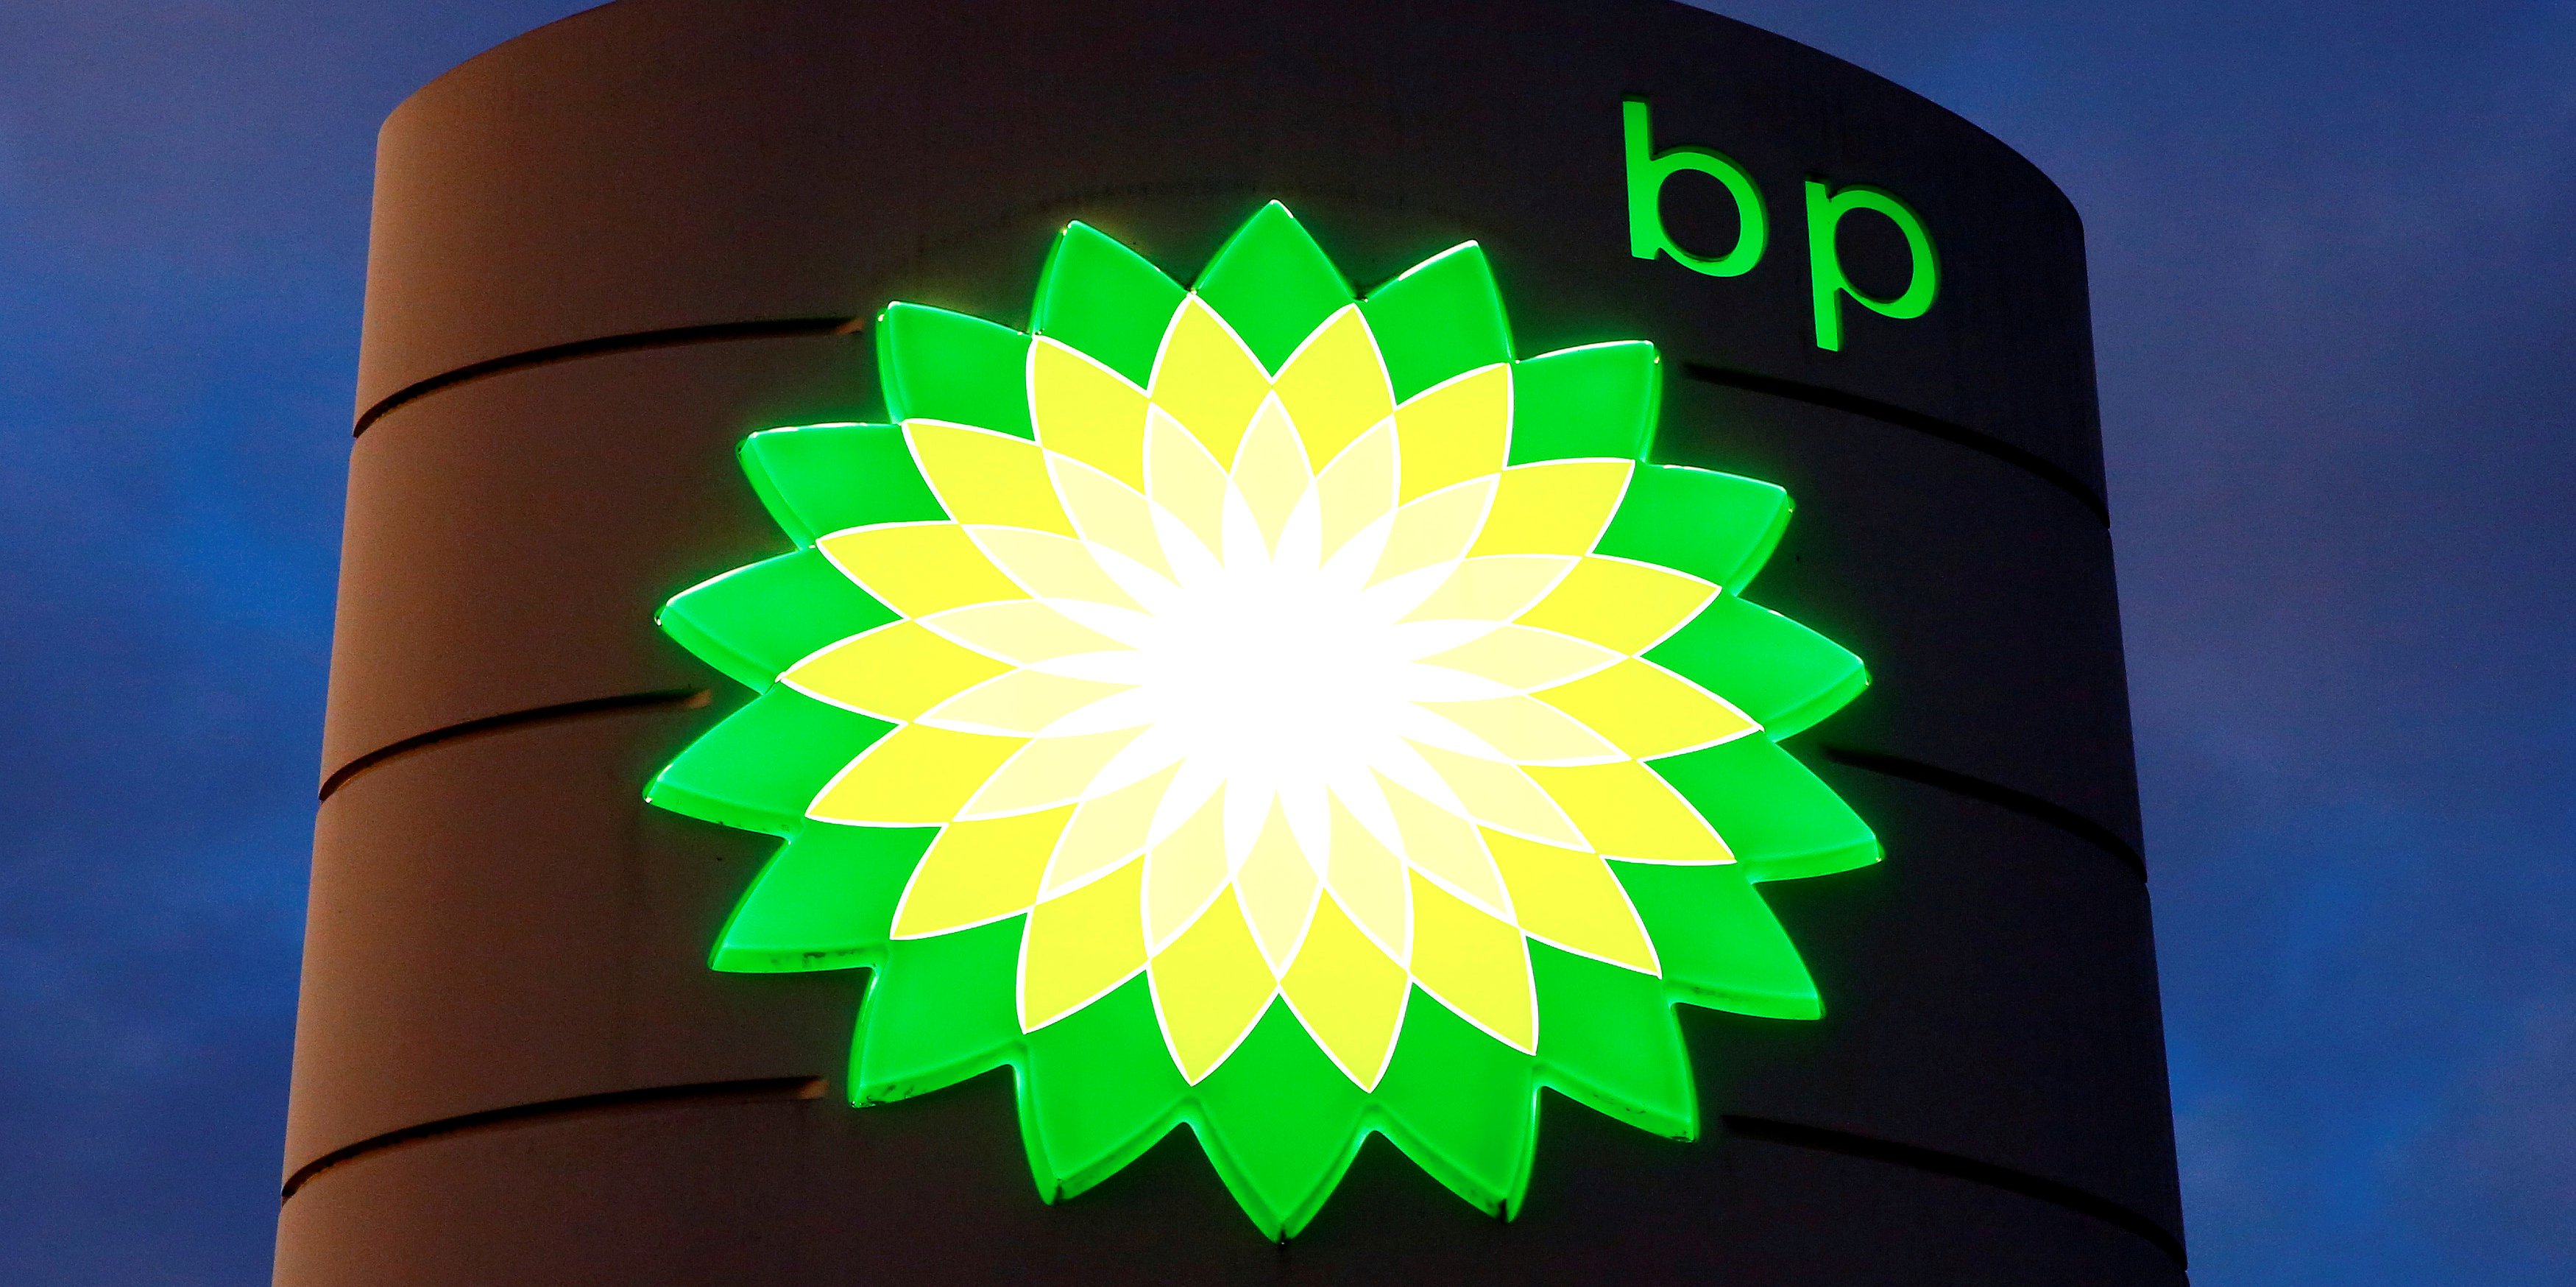 Le géant pétrolier BP va supprimer 10.000 emplois dans le monde